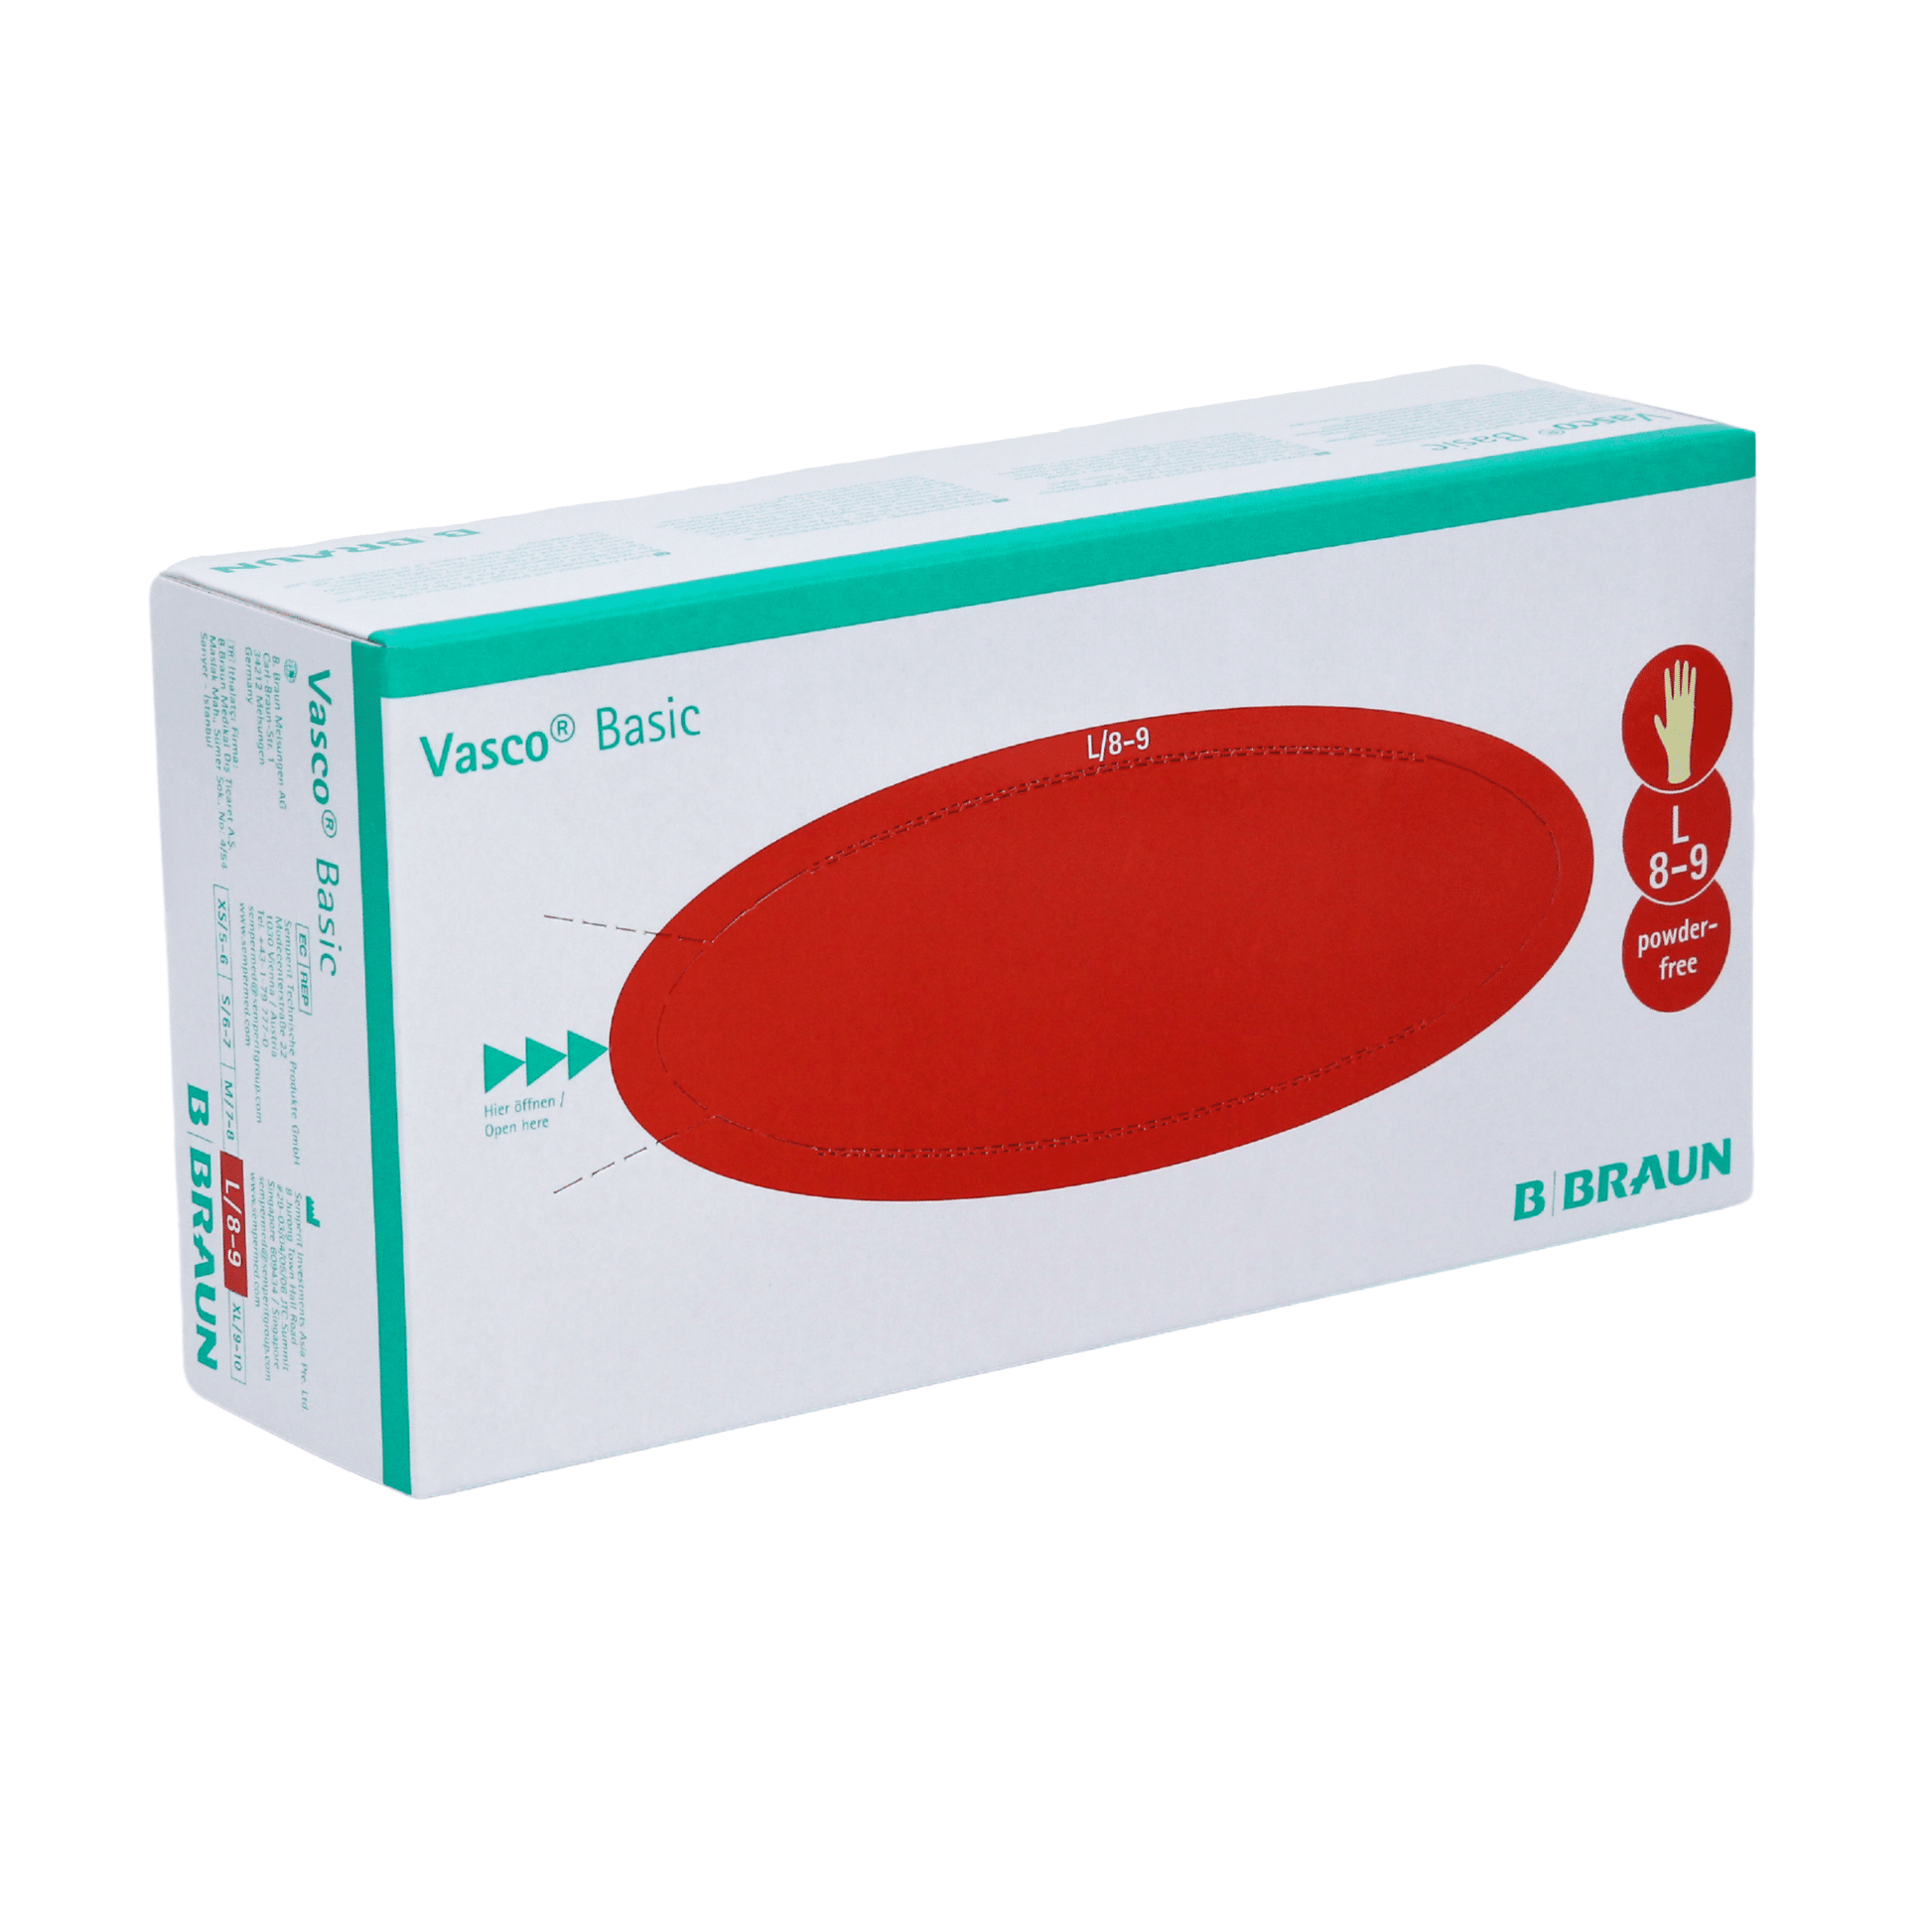 Eine Packung B. Braun Vasco® Basic Latex-Untersuchungshandschuhe in der Größe Medium, geeignet für den puderfreien medizinischen Einsatz als medizinischer Untersuchungshandschuh, abgebildet auf weißem Hintergrund.